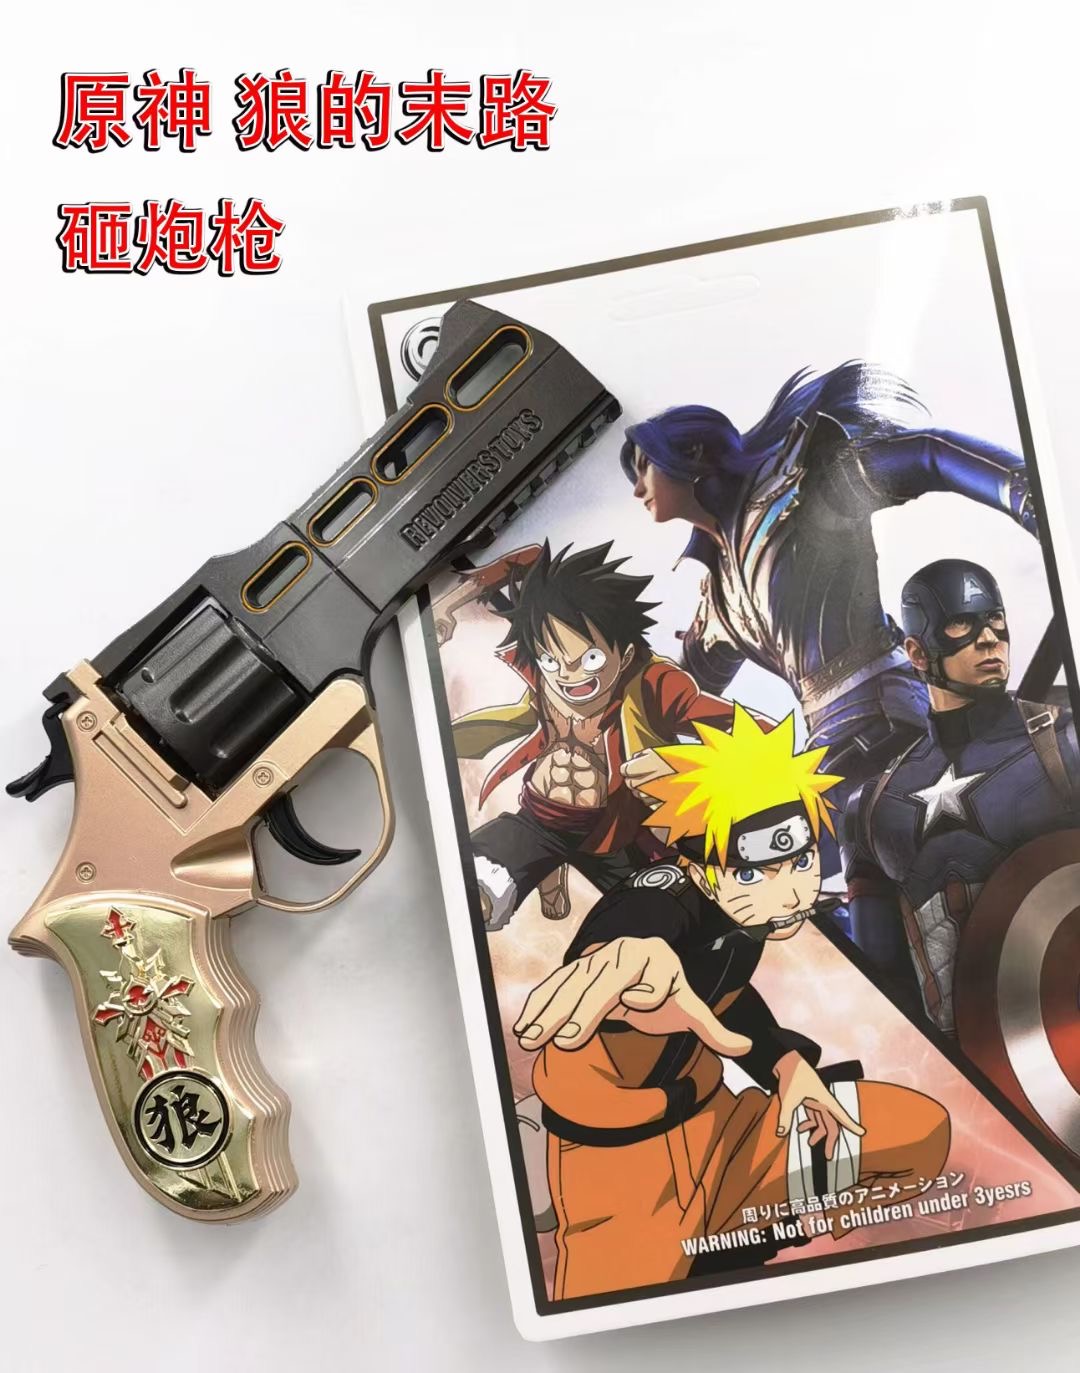 Genshin Impact anime anime gun smashing toy